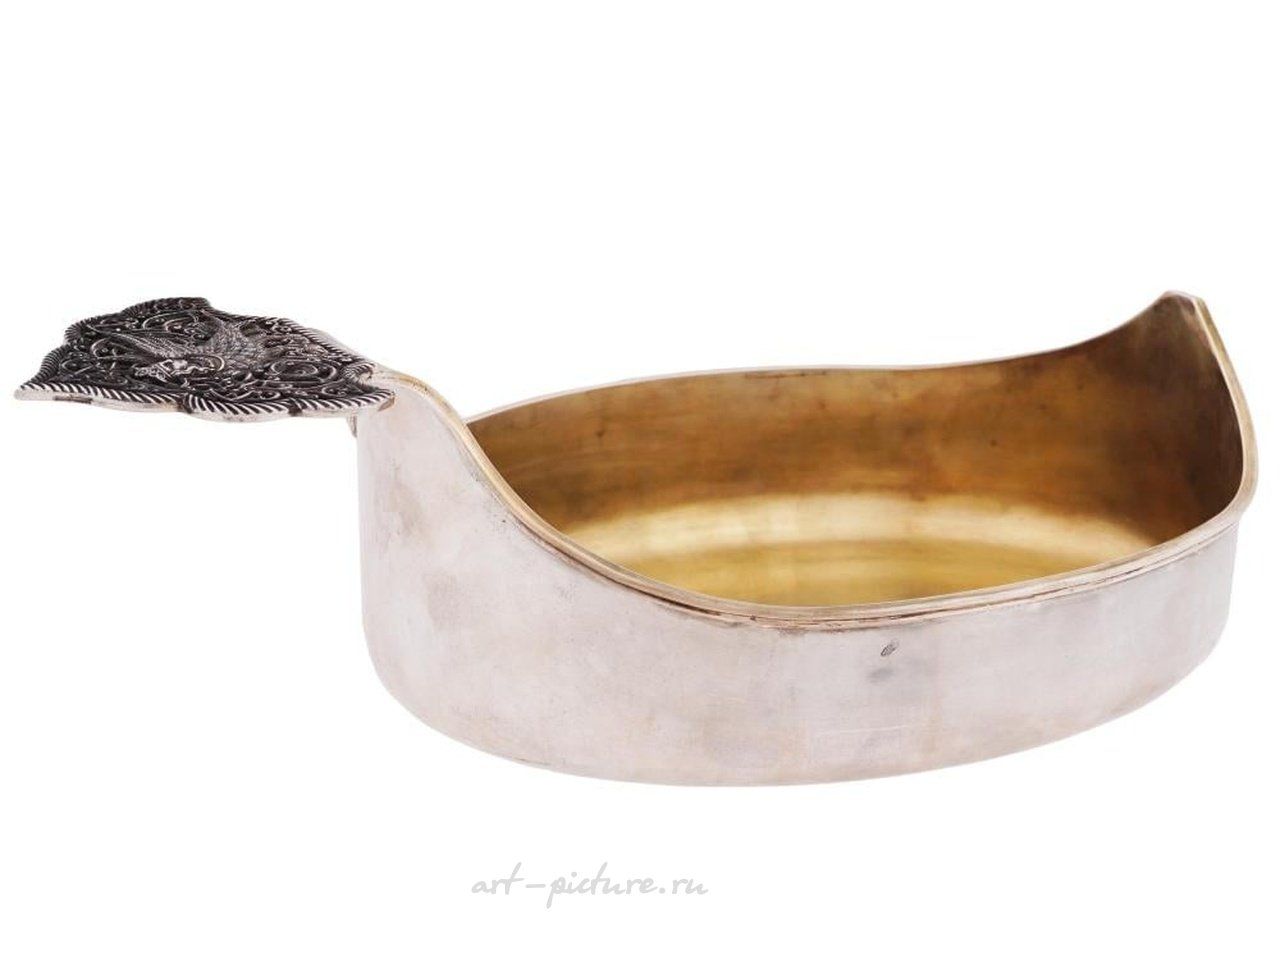 Русское серебро , Серебряный ковш с изображением большой русской мифологической птицы